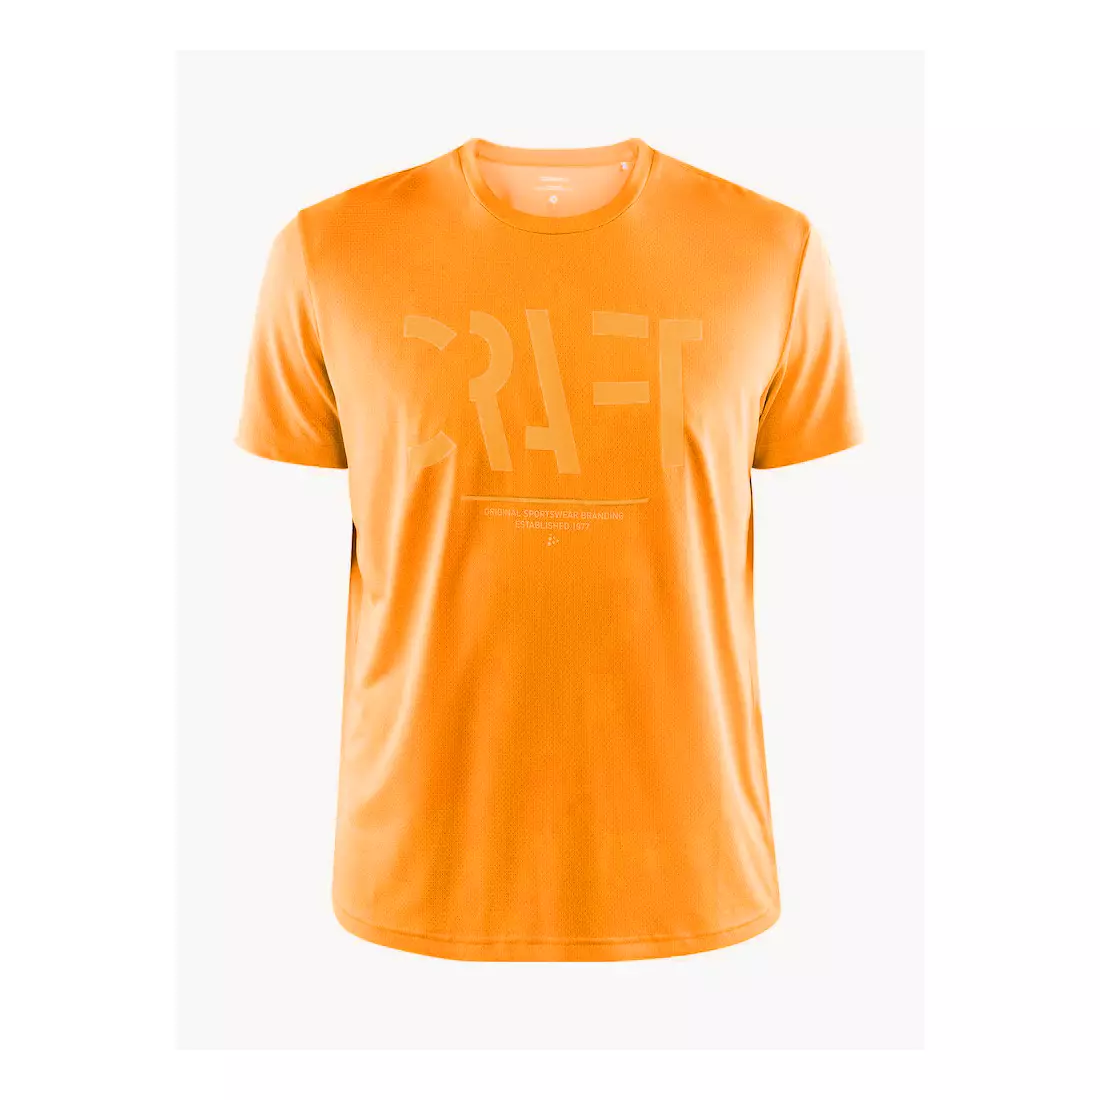 CRAFT EAZE MESH Tricou bărbătesc sport / alergare, portocaliu 1907018-557000